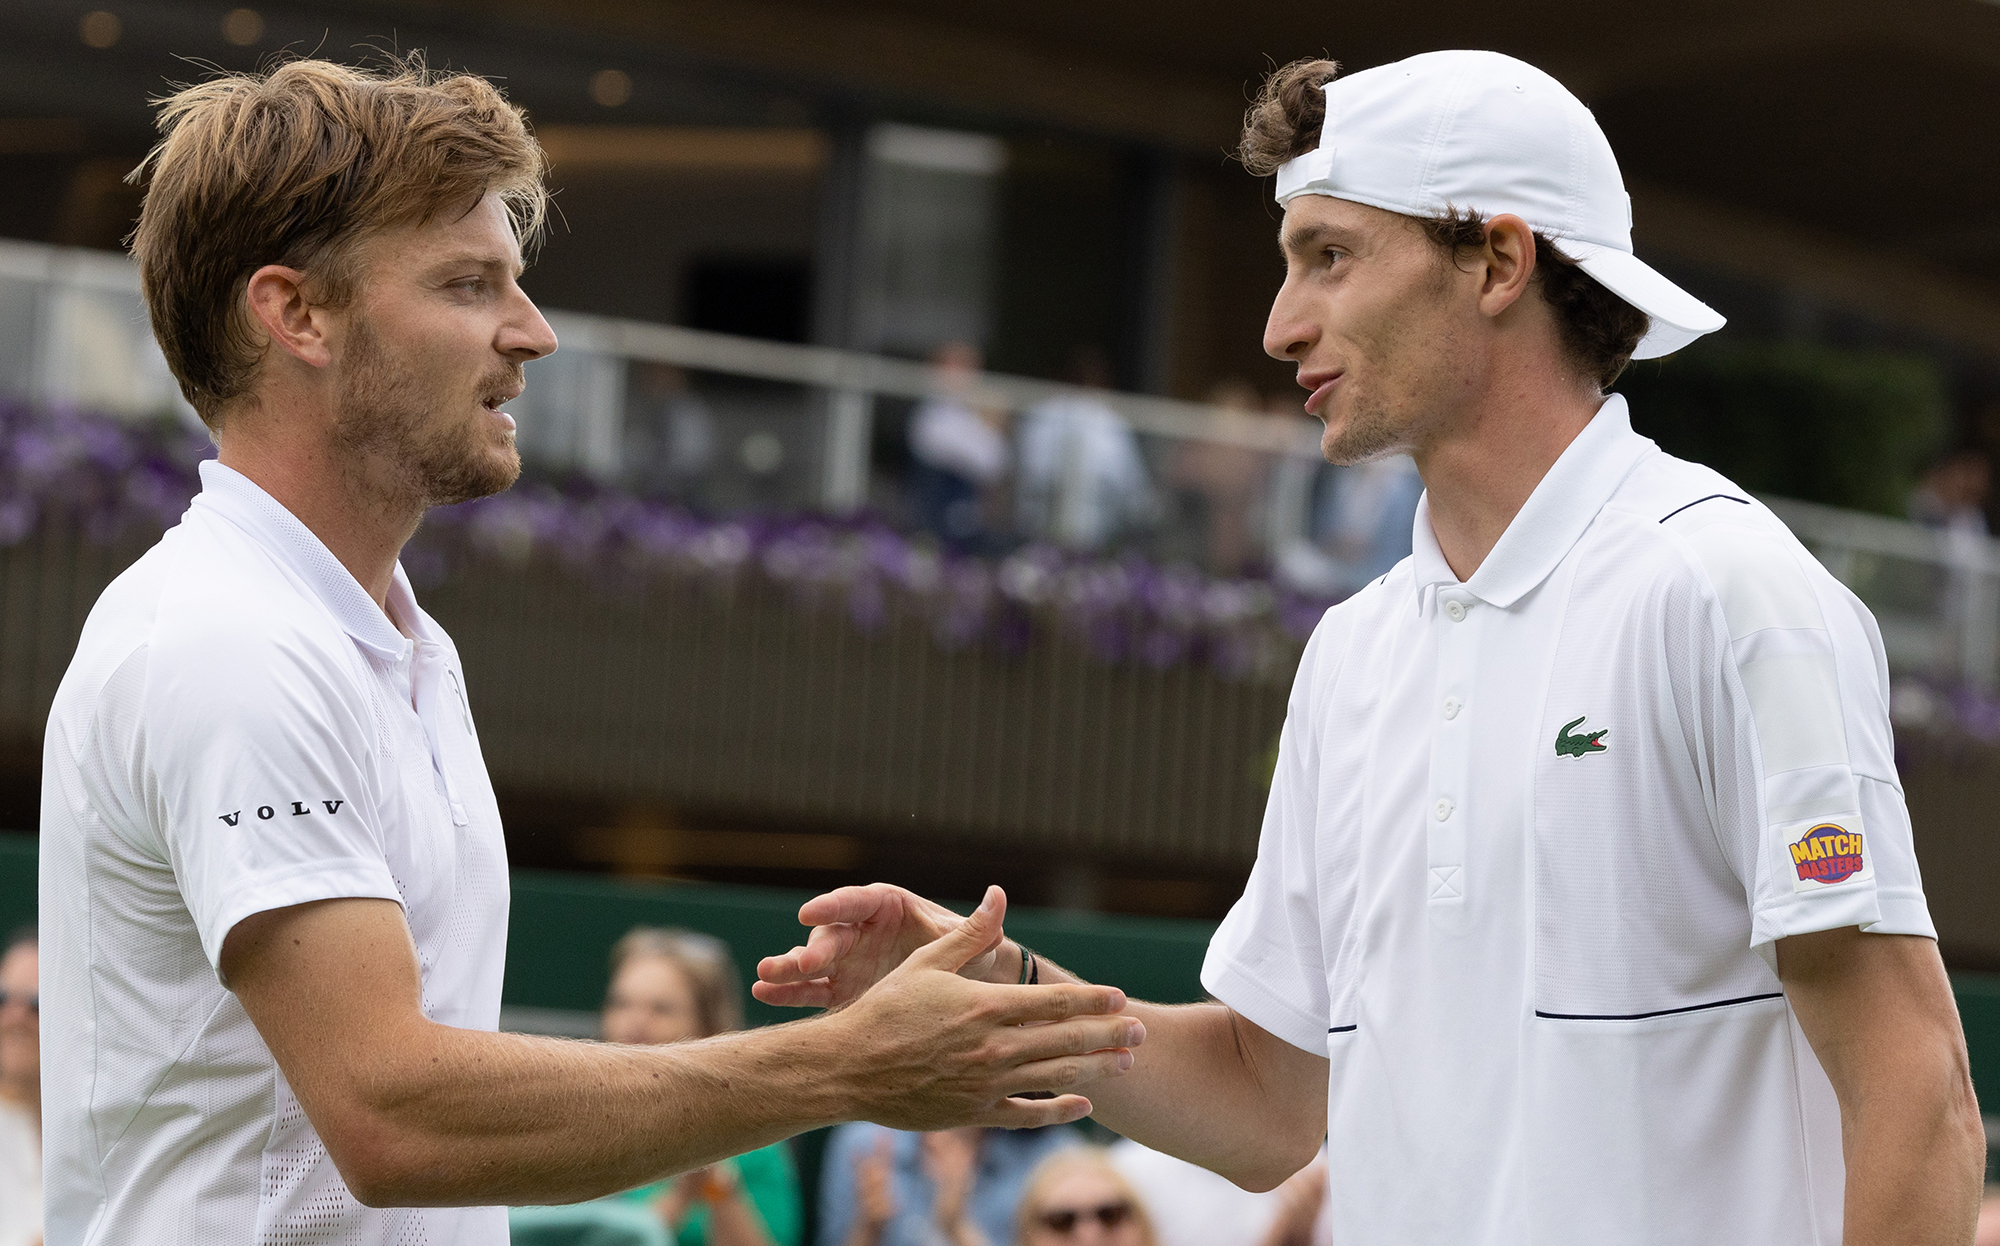 David Goffin und Ugo Humbert nach ihrer Begegnung in Wimbledon (Bild: Benoit Doppagne/Belga)